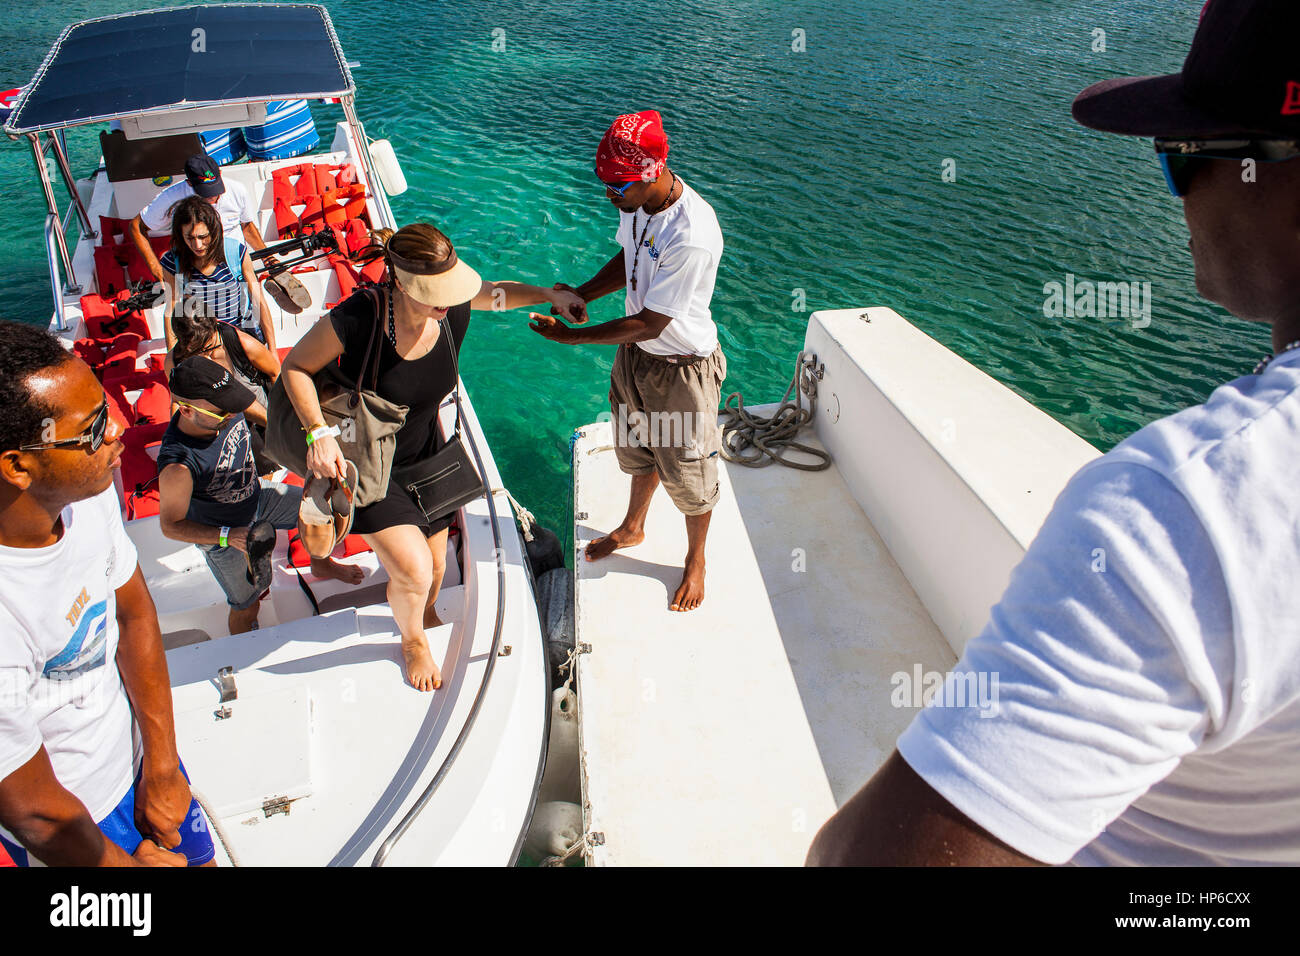 Yendo a la Isla Saona, Crew ayuda a los turistas a subir al catamarán, Puntacana, República Dominicana Foto de stock